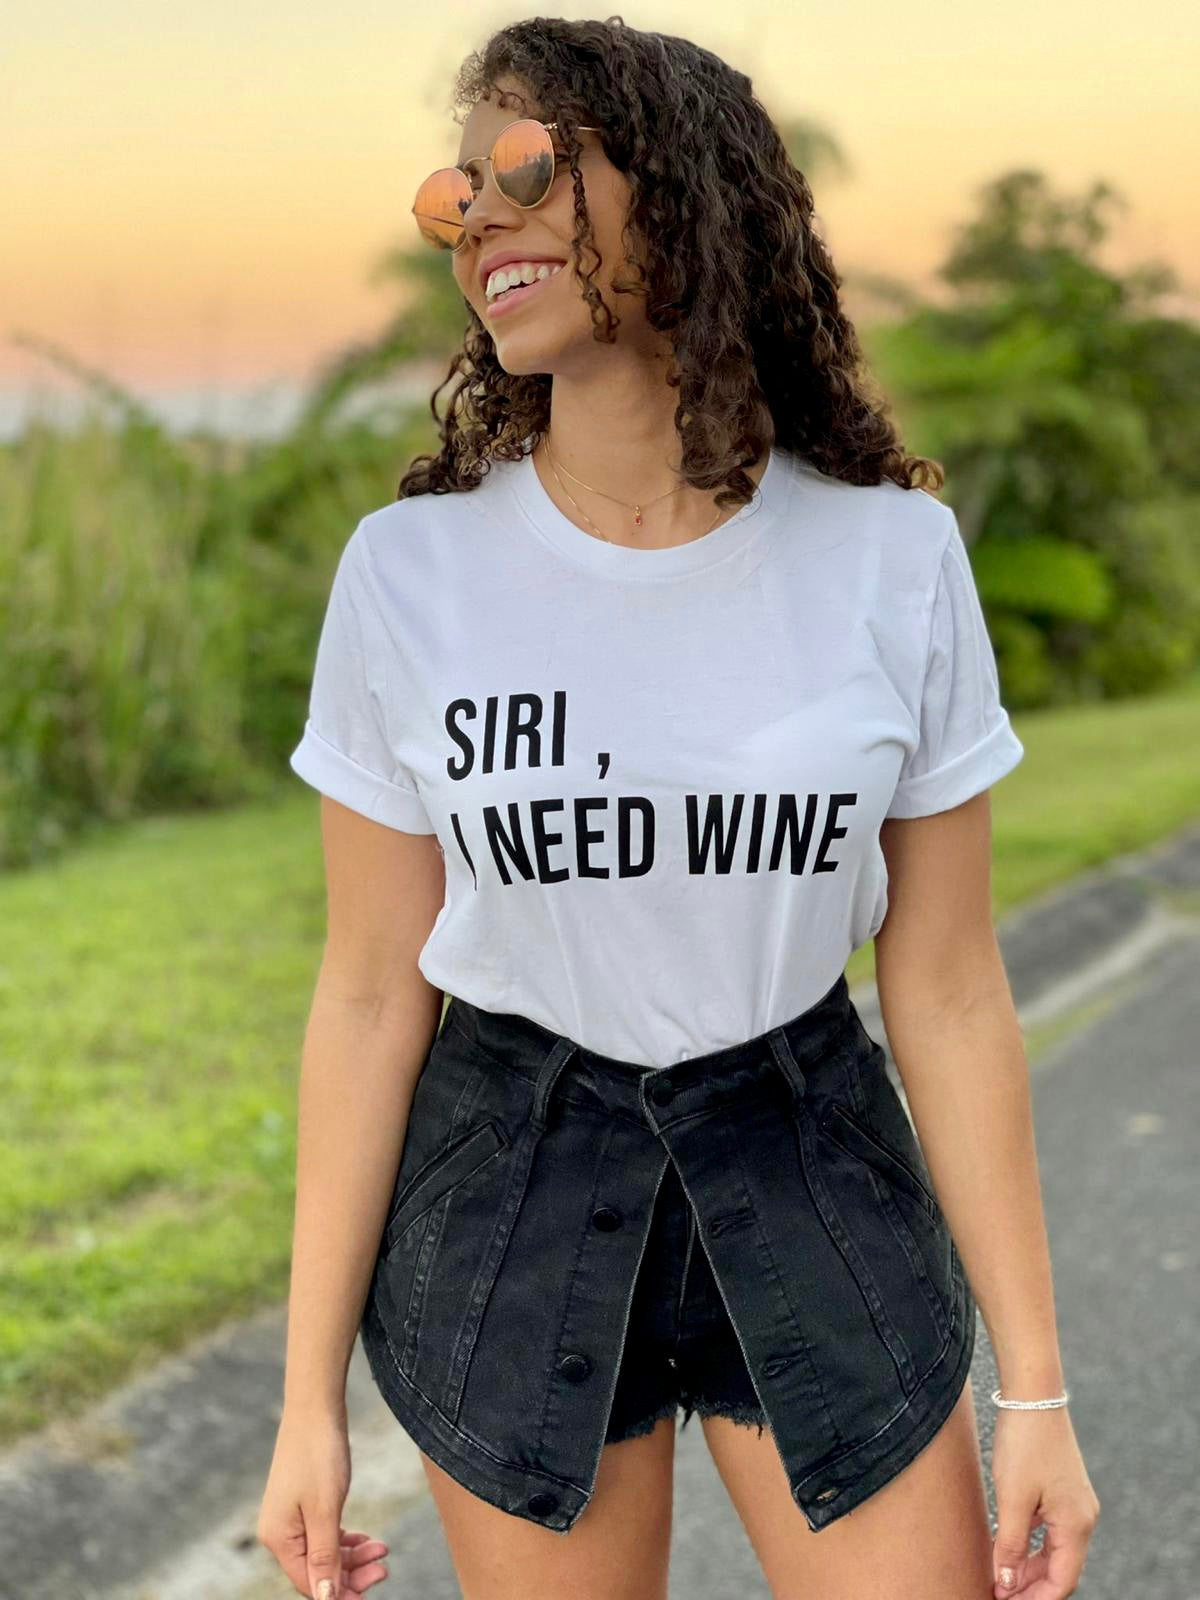 Siri, I need wine